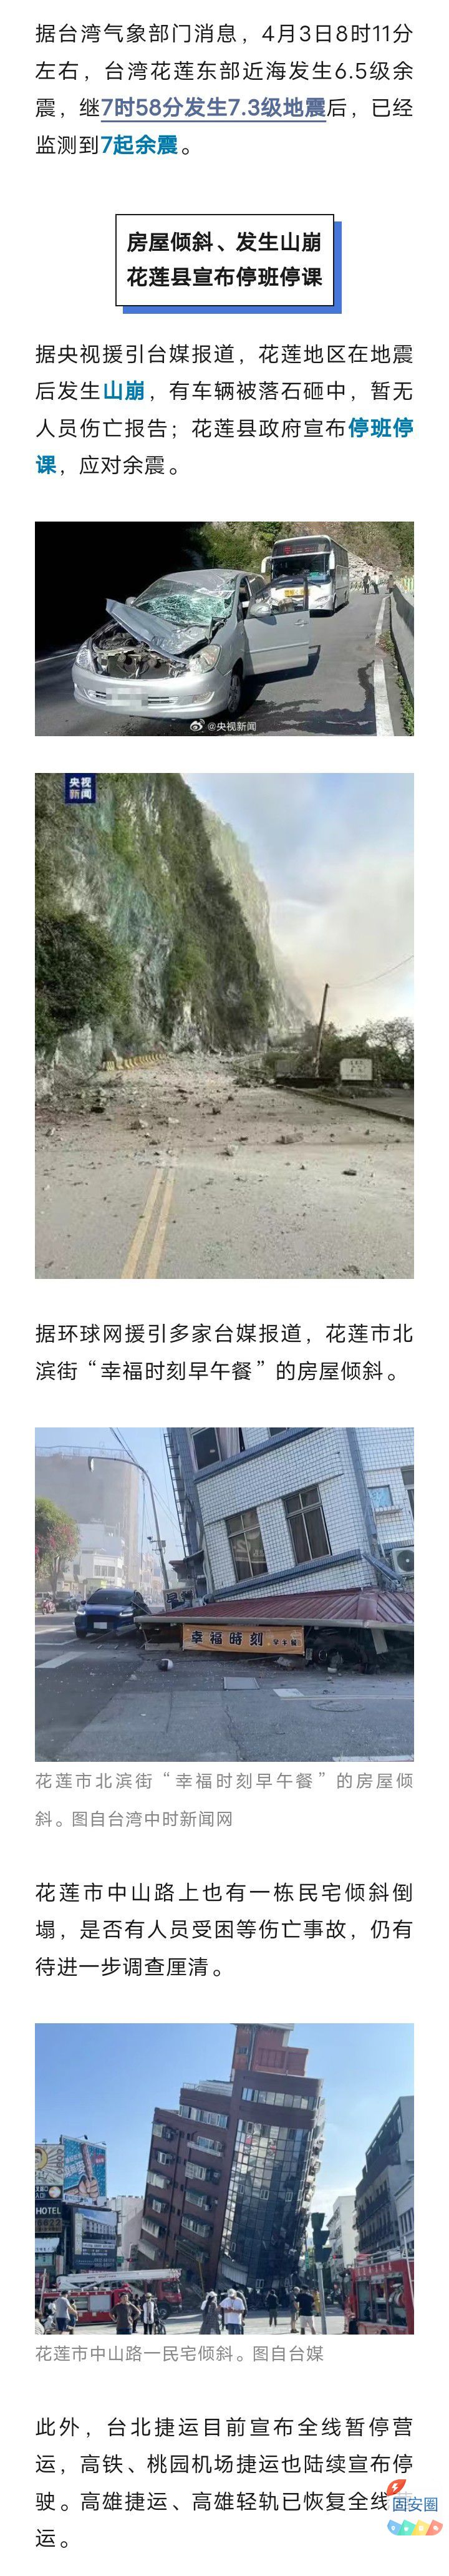 房屋倾斜、山崩，停班停课停运！台湾花莲已监测到7起余震，地震成因——7271 作者:乁沙漠 帖子ID:297903 